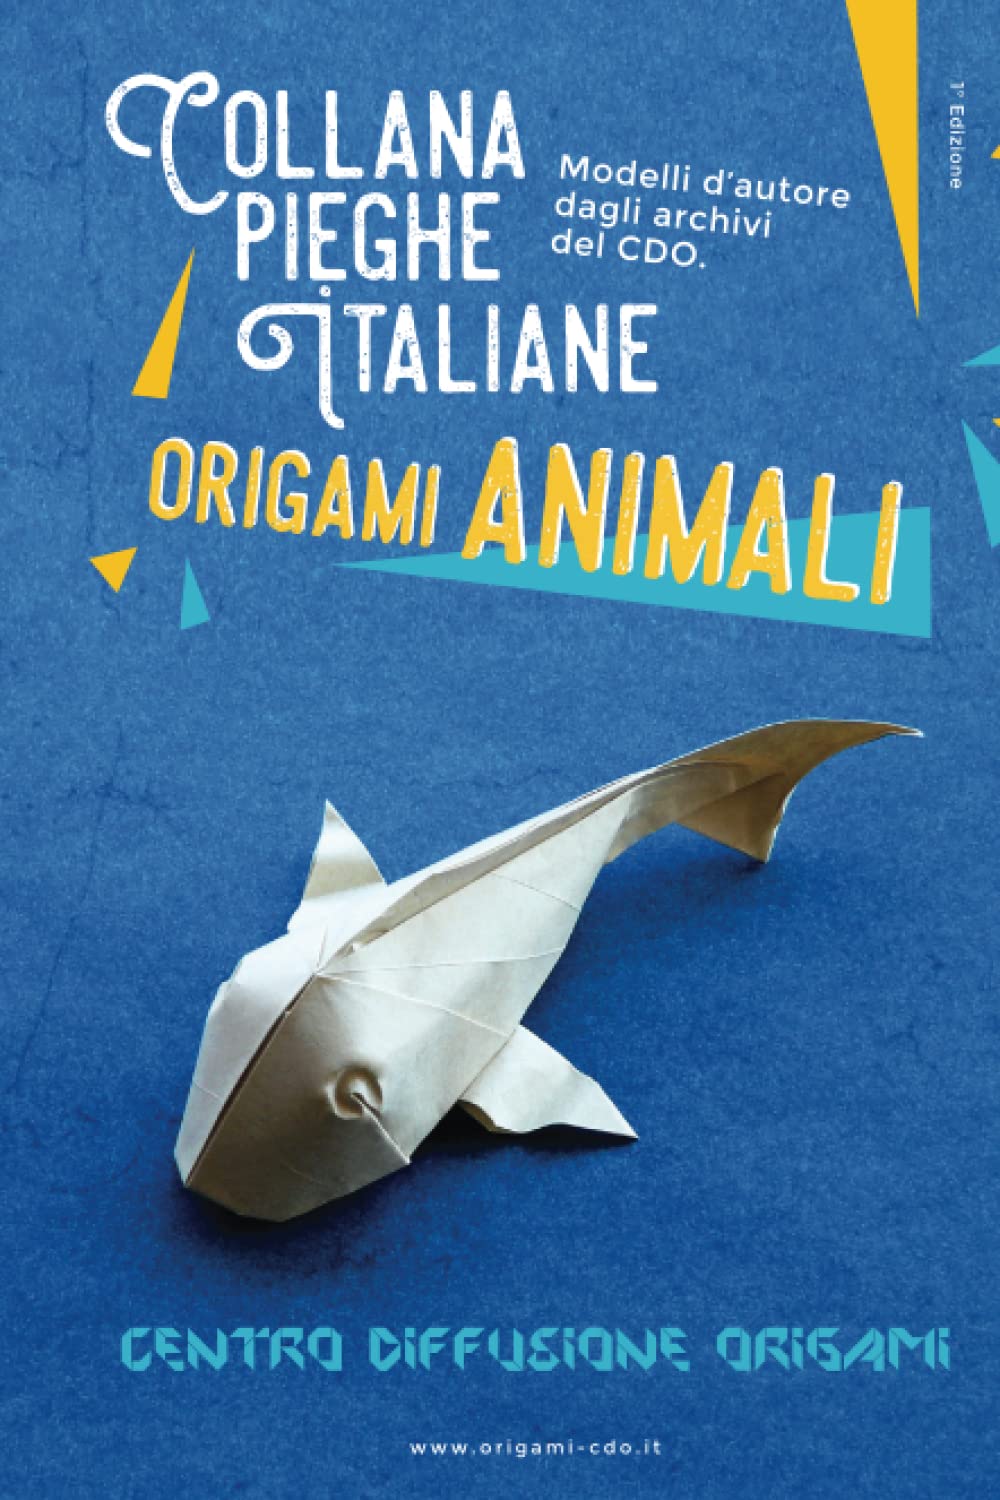 Collana pieghe Italiane - origami ANIMALI : page 32.